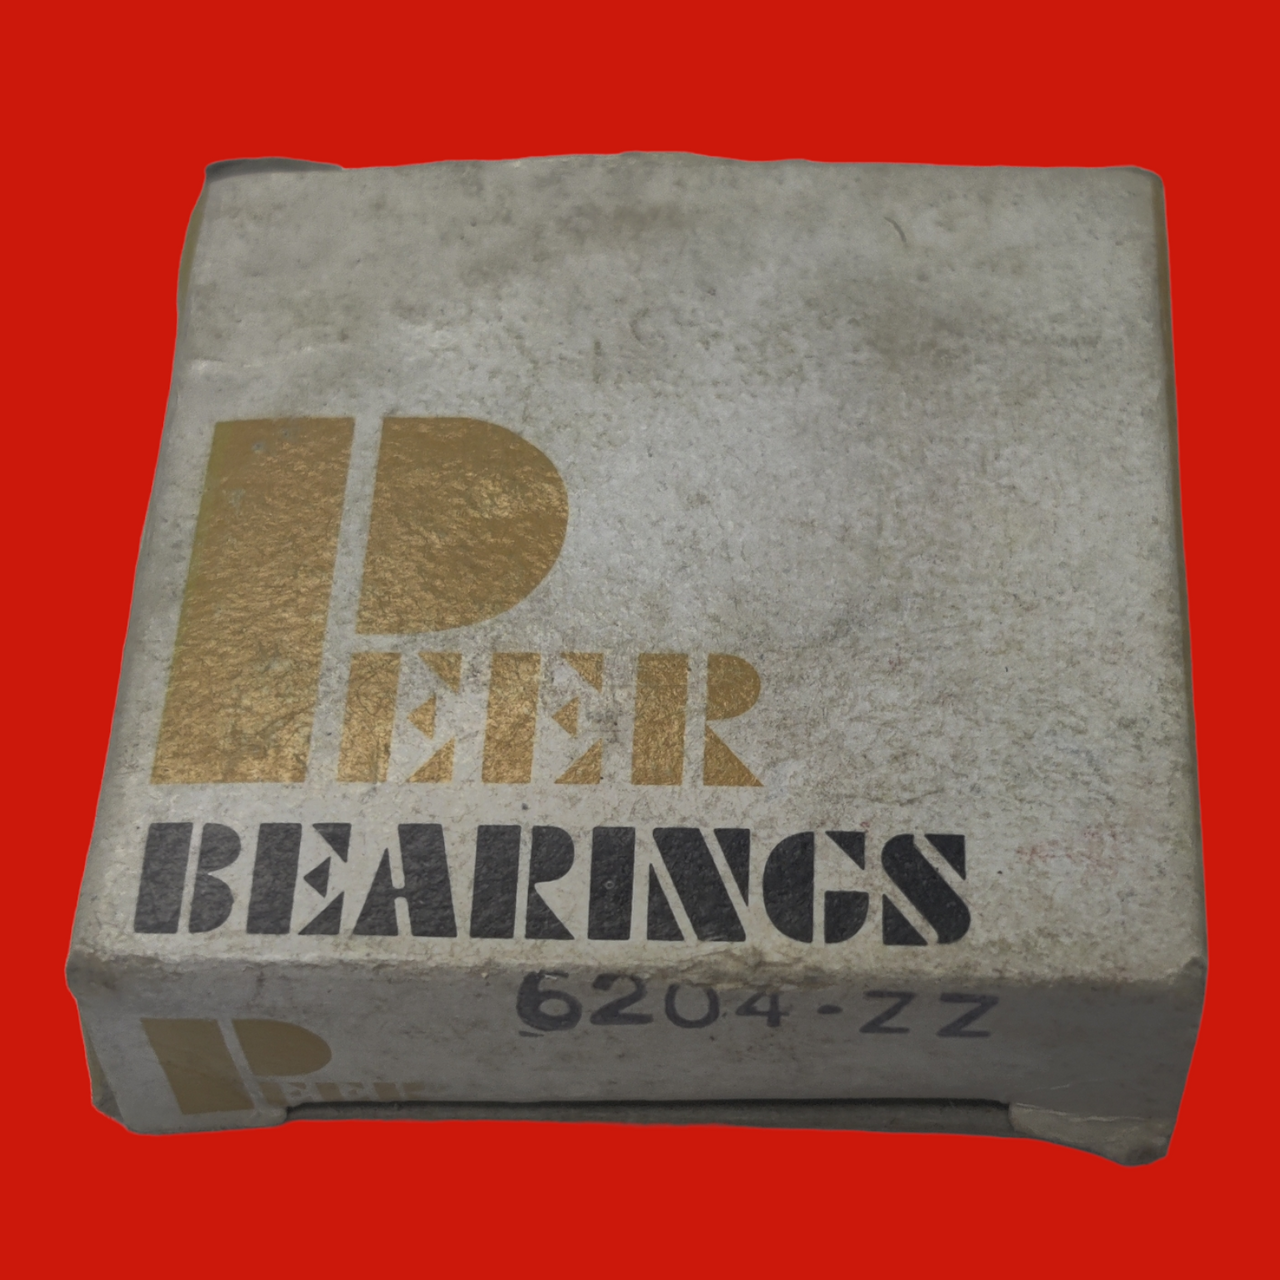 Peer Bearings 6204 ZZ Single Row Ball Bearing